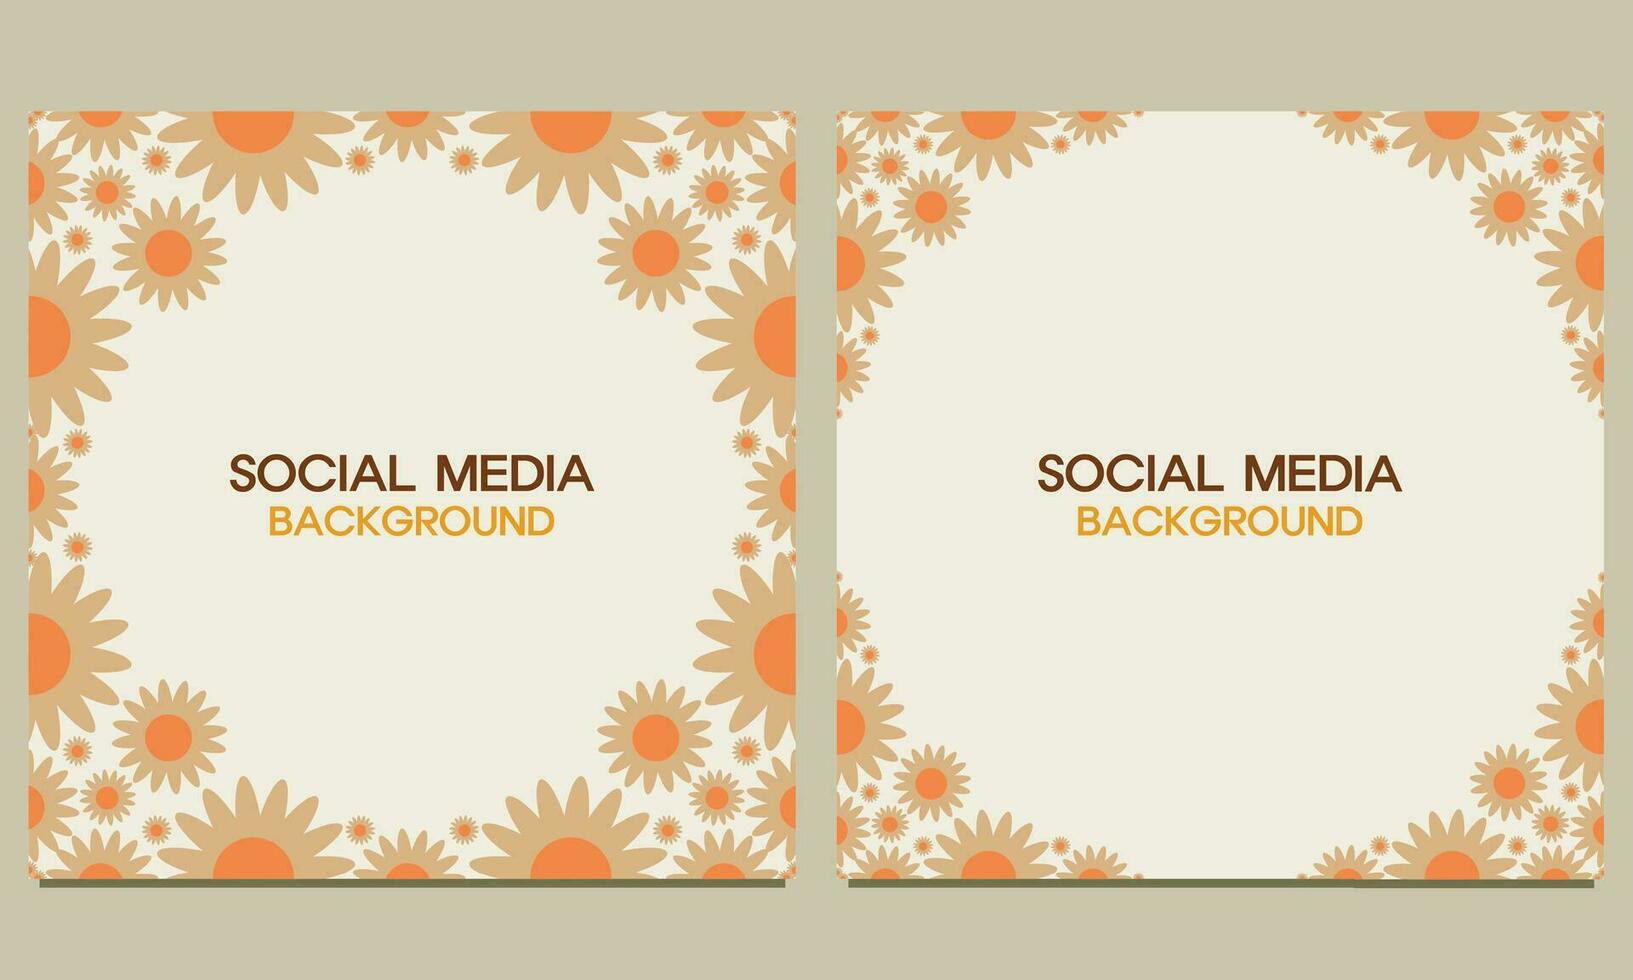 social media posta bakgrund med naturlig blommig prydnad. lämplig för social media posta, baner design och internet annonser. vektor